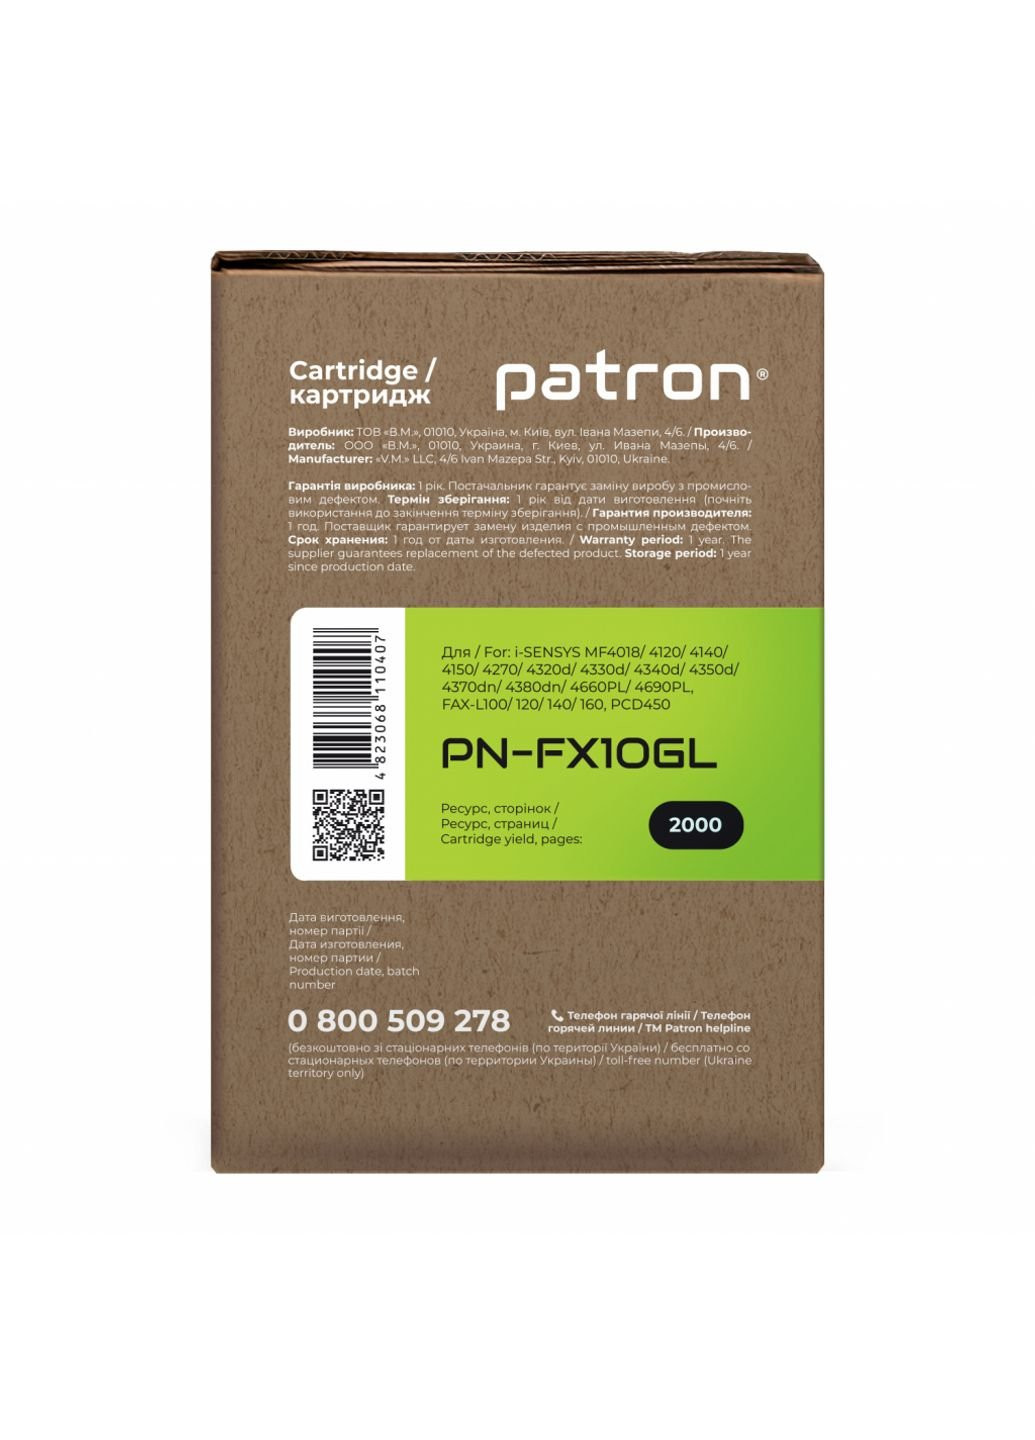 Картридж CANON FX-10 GREEN Label (для MF4120 / 4140) (PN-FX10GL) Patron canon fx-10 green label (для mf4120/ 4140) (247617797)